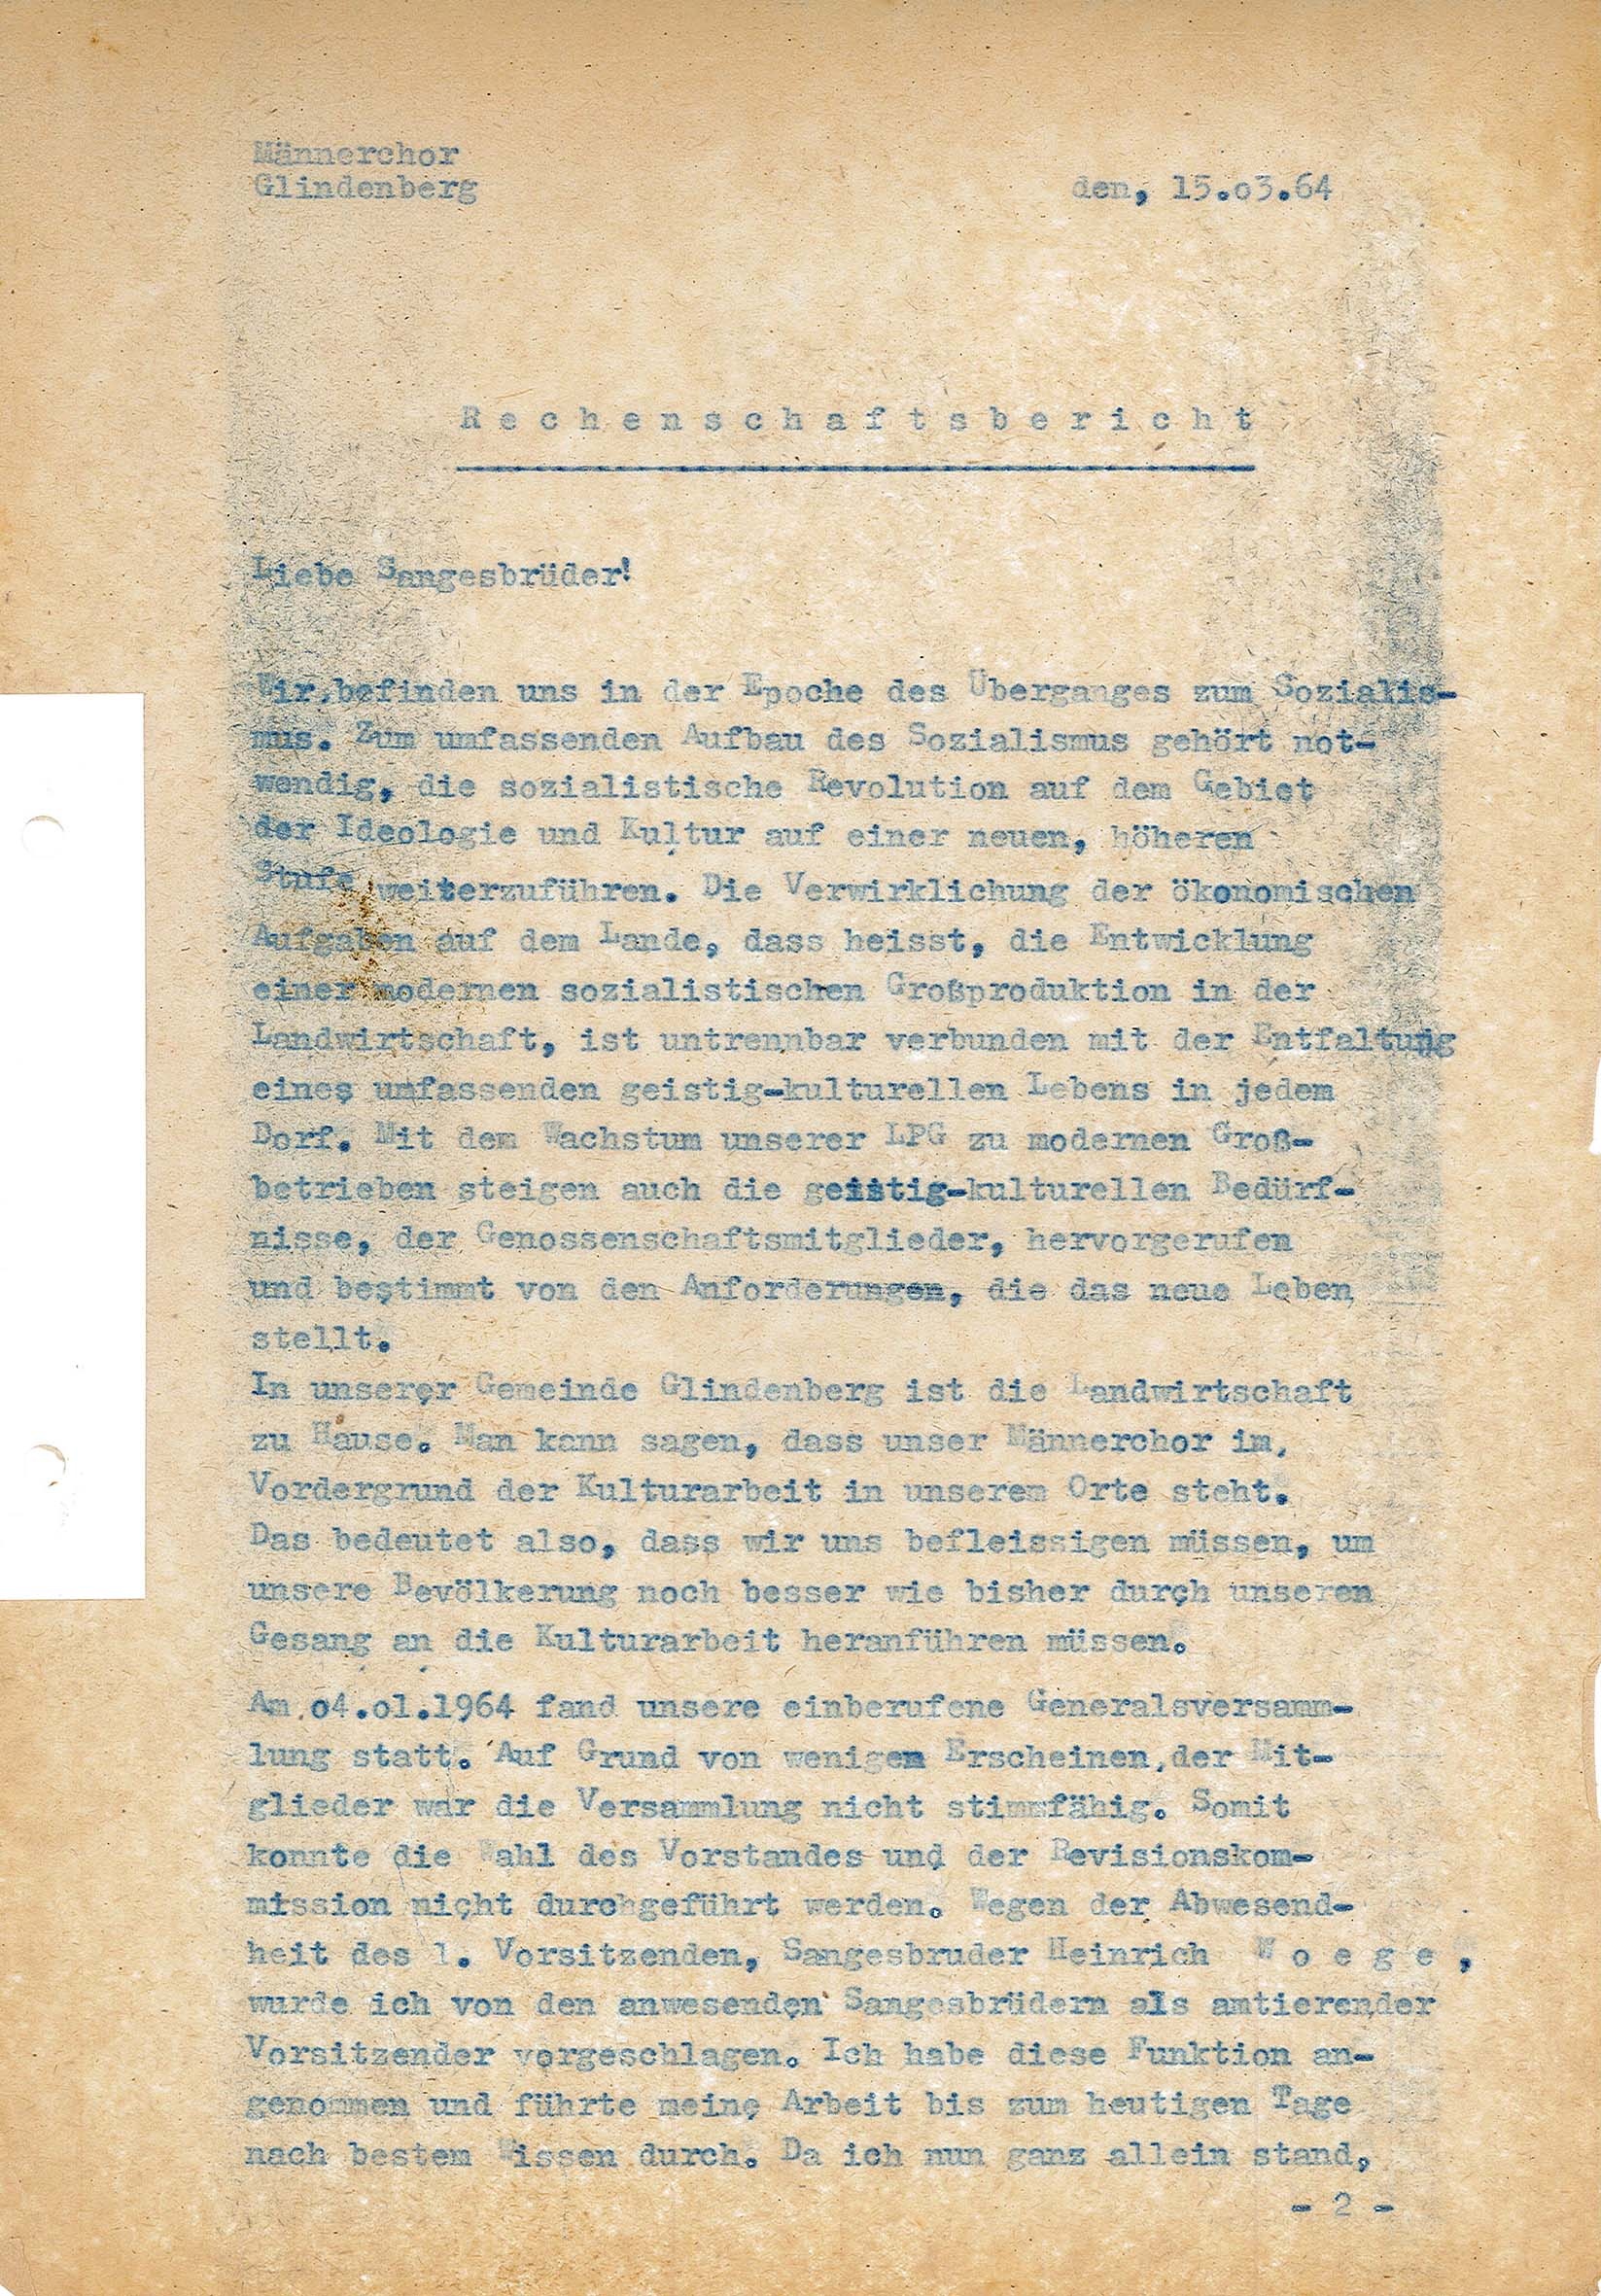 Rechenschaftsbericht des Männerchor Glindenberg, 15.03.1964 (Museum Wolmirstedt RR-F)